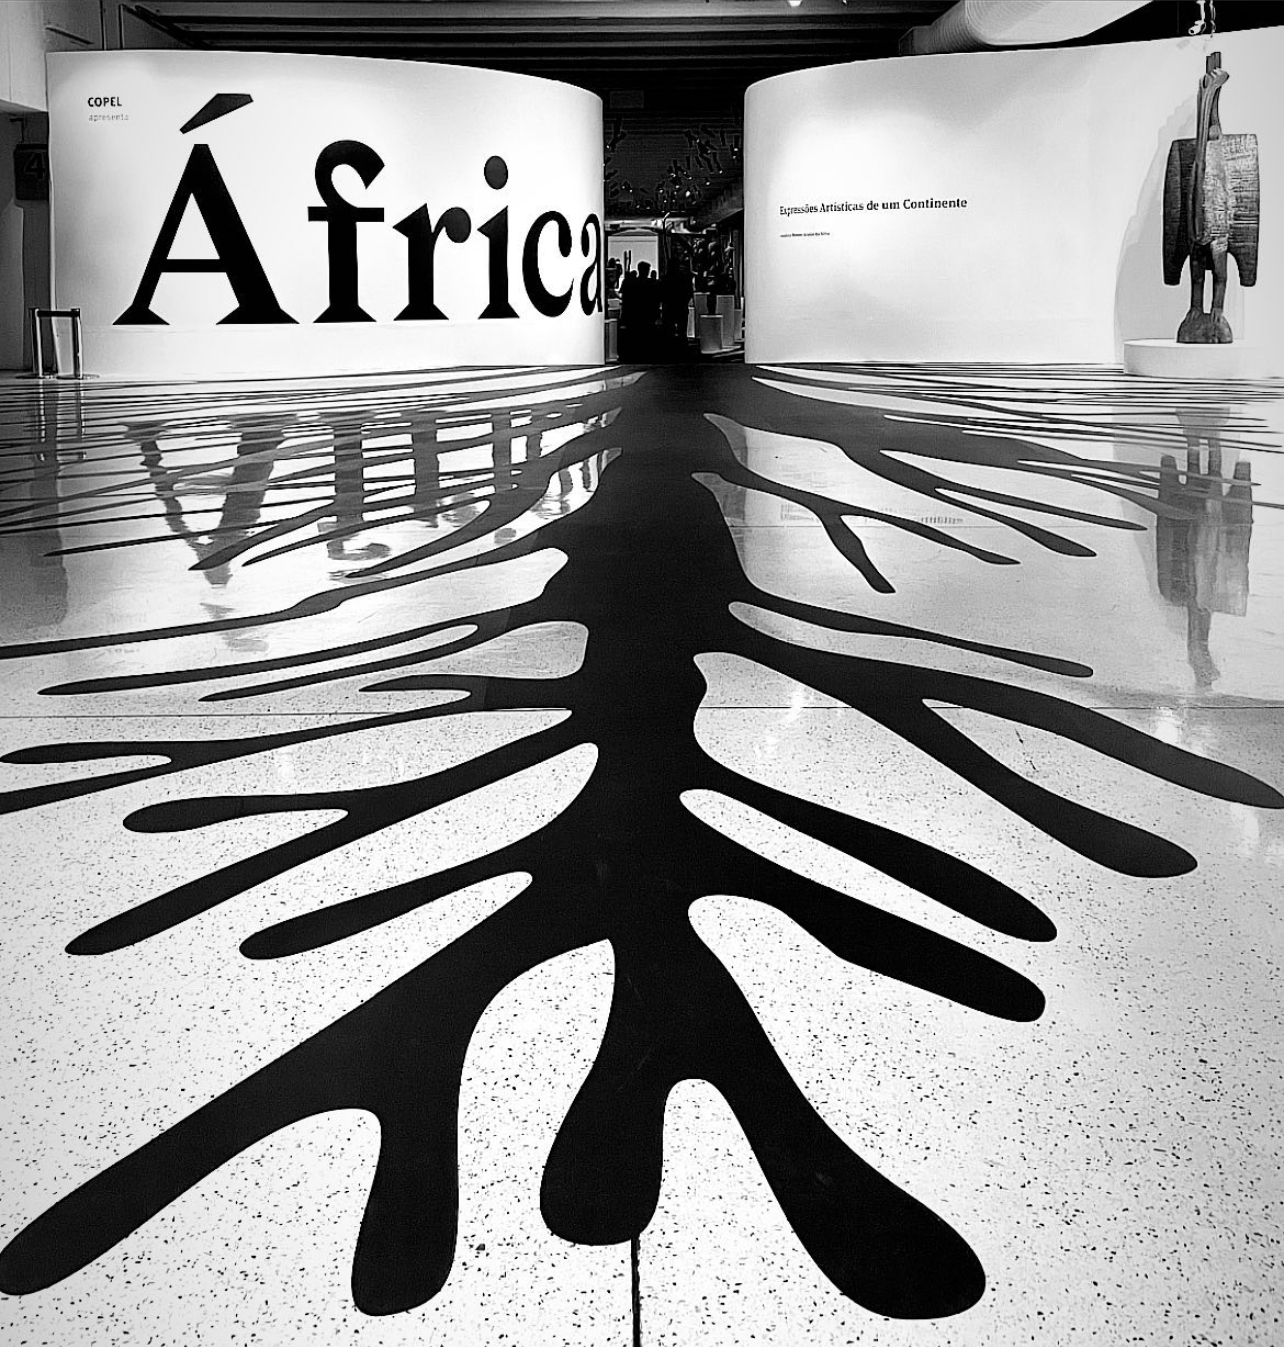 MON realiza exposição de arte africana com peças recém-incorporadas ao seu acervo